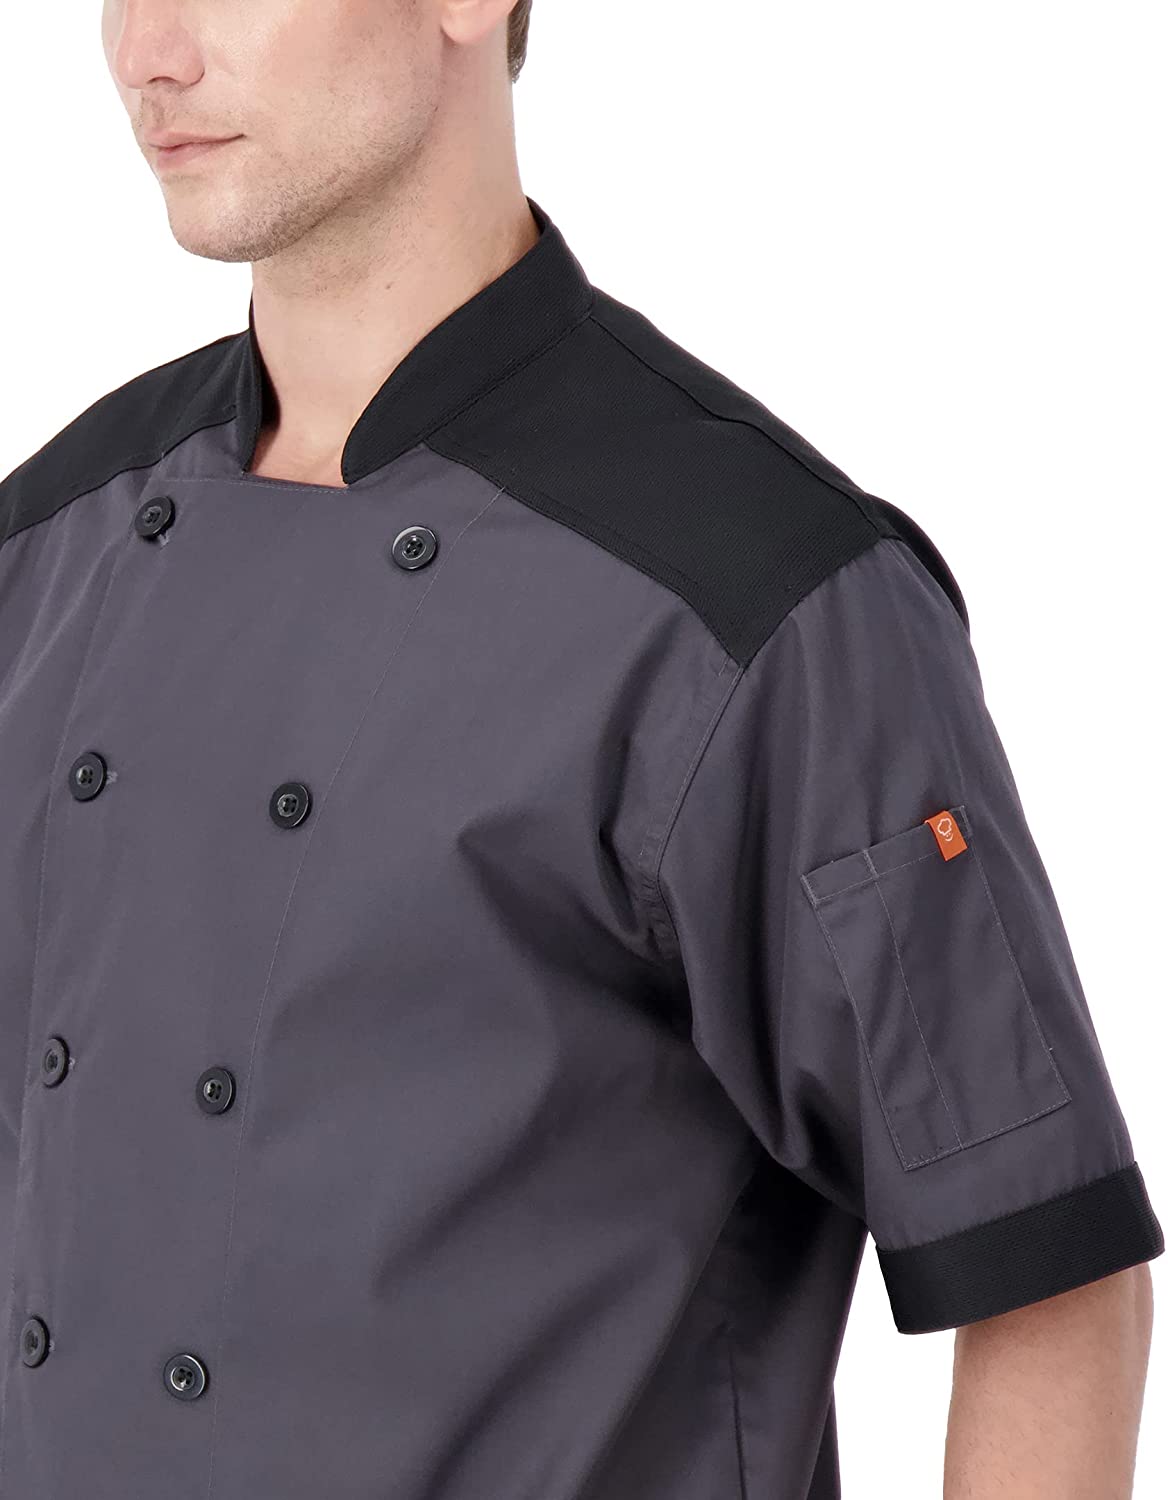 Men's Short Sleeve Lightweight Chef Coat